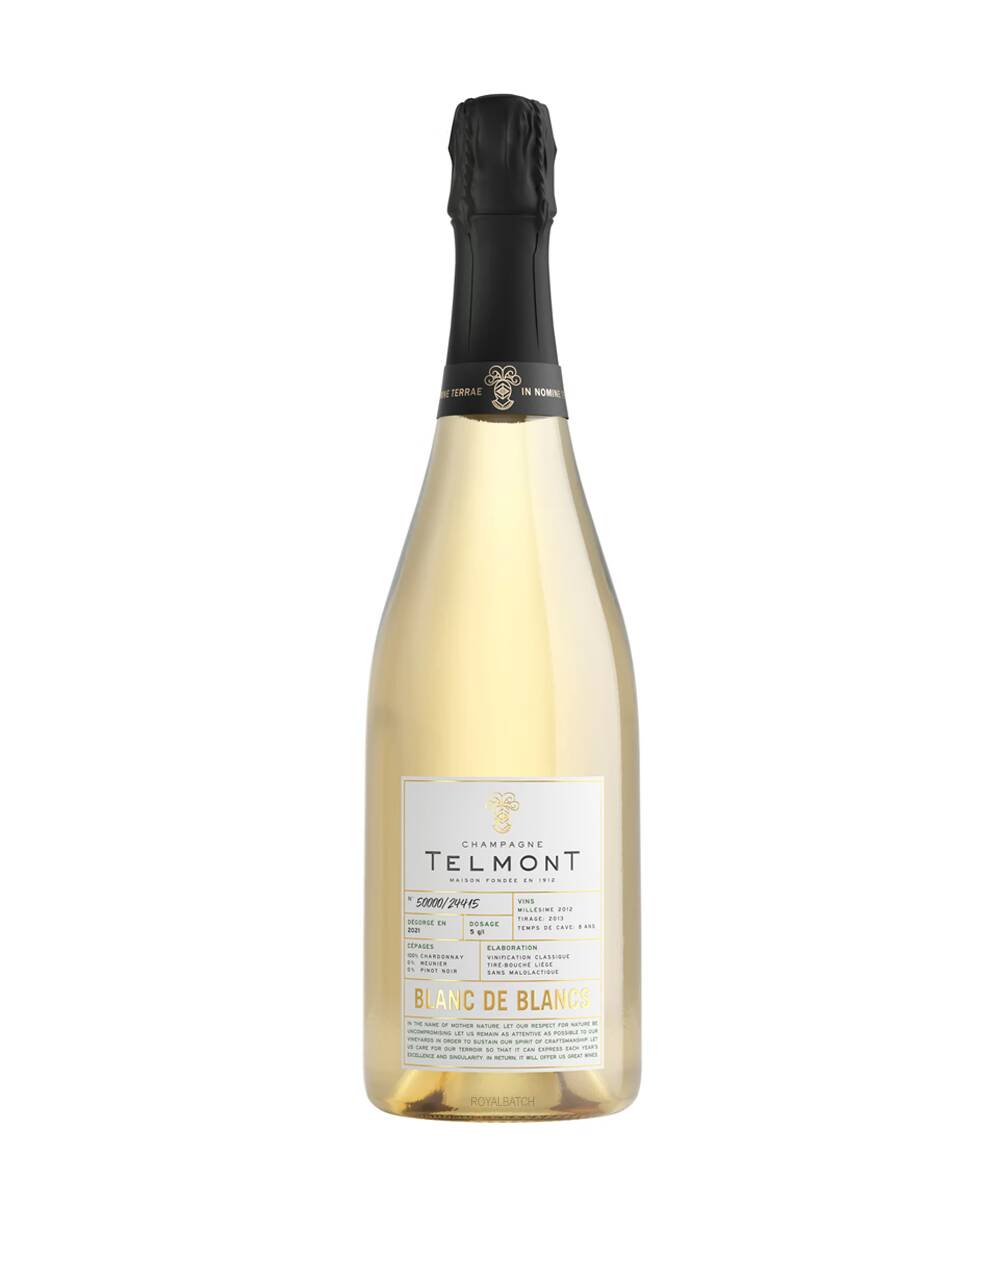 Telmont Blanc De Blancs 2012 Champagne